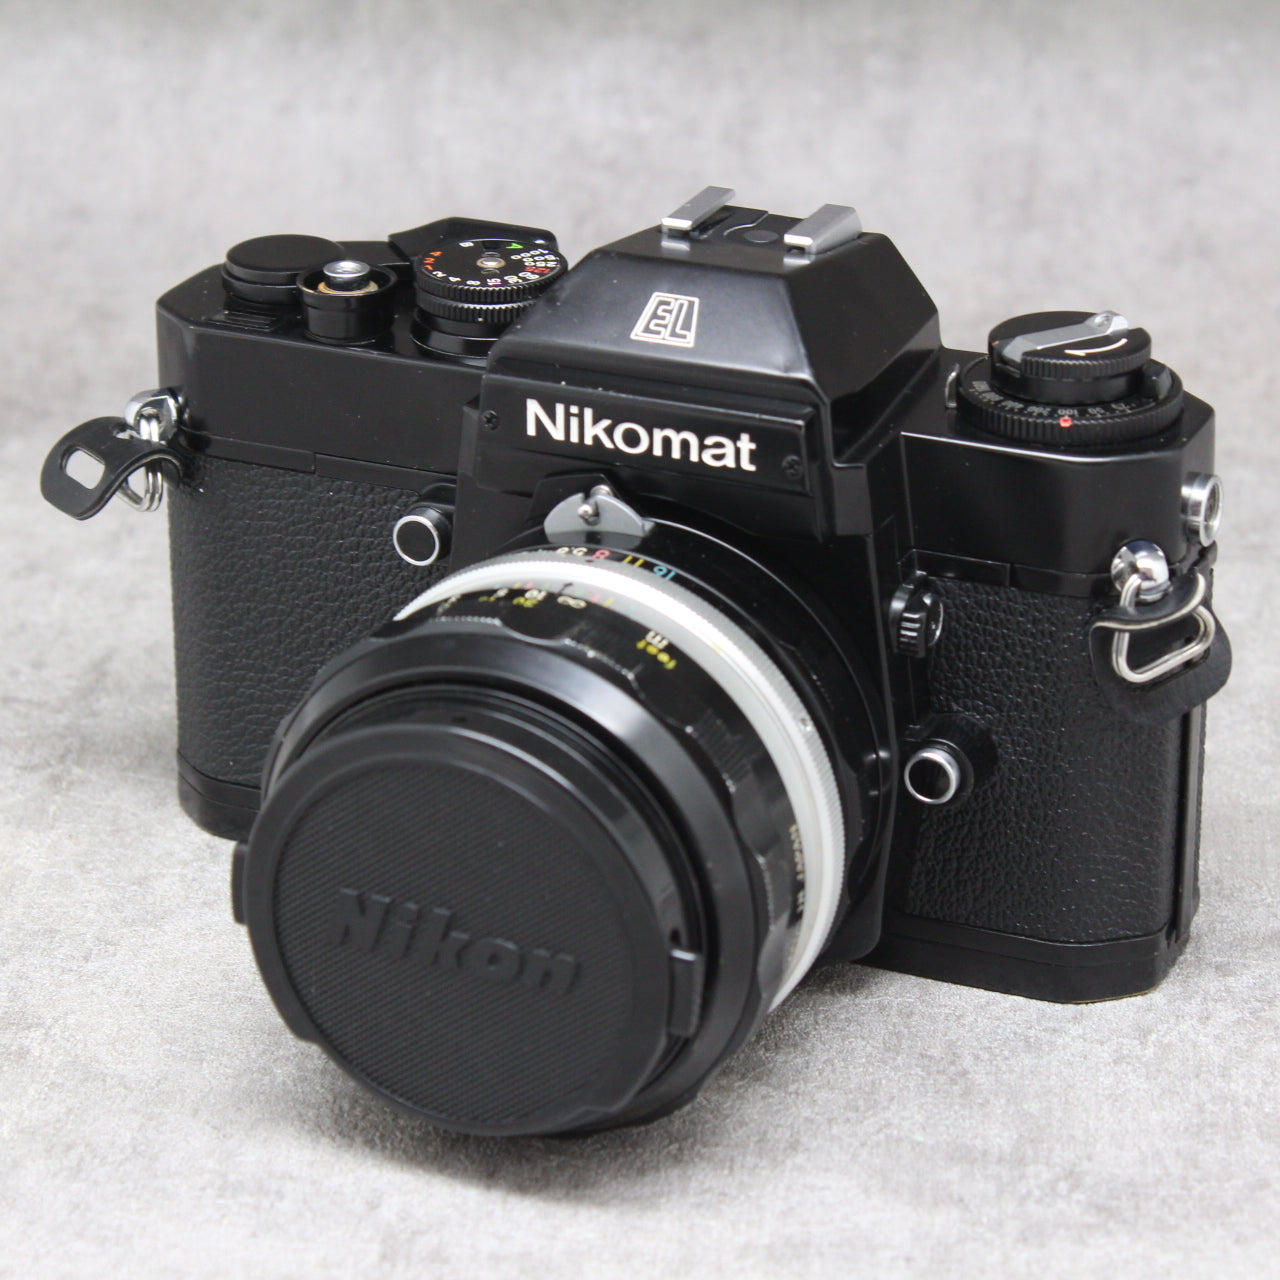 Nikon Nikomat EL + Nikkor50mm f1.4